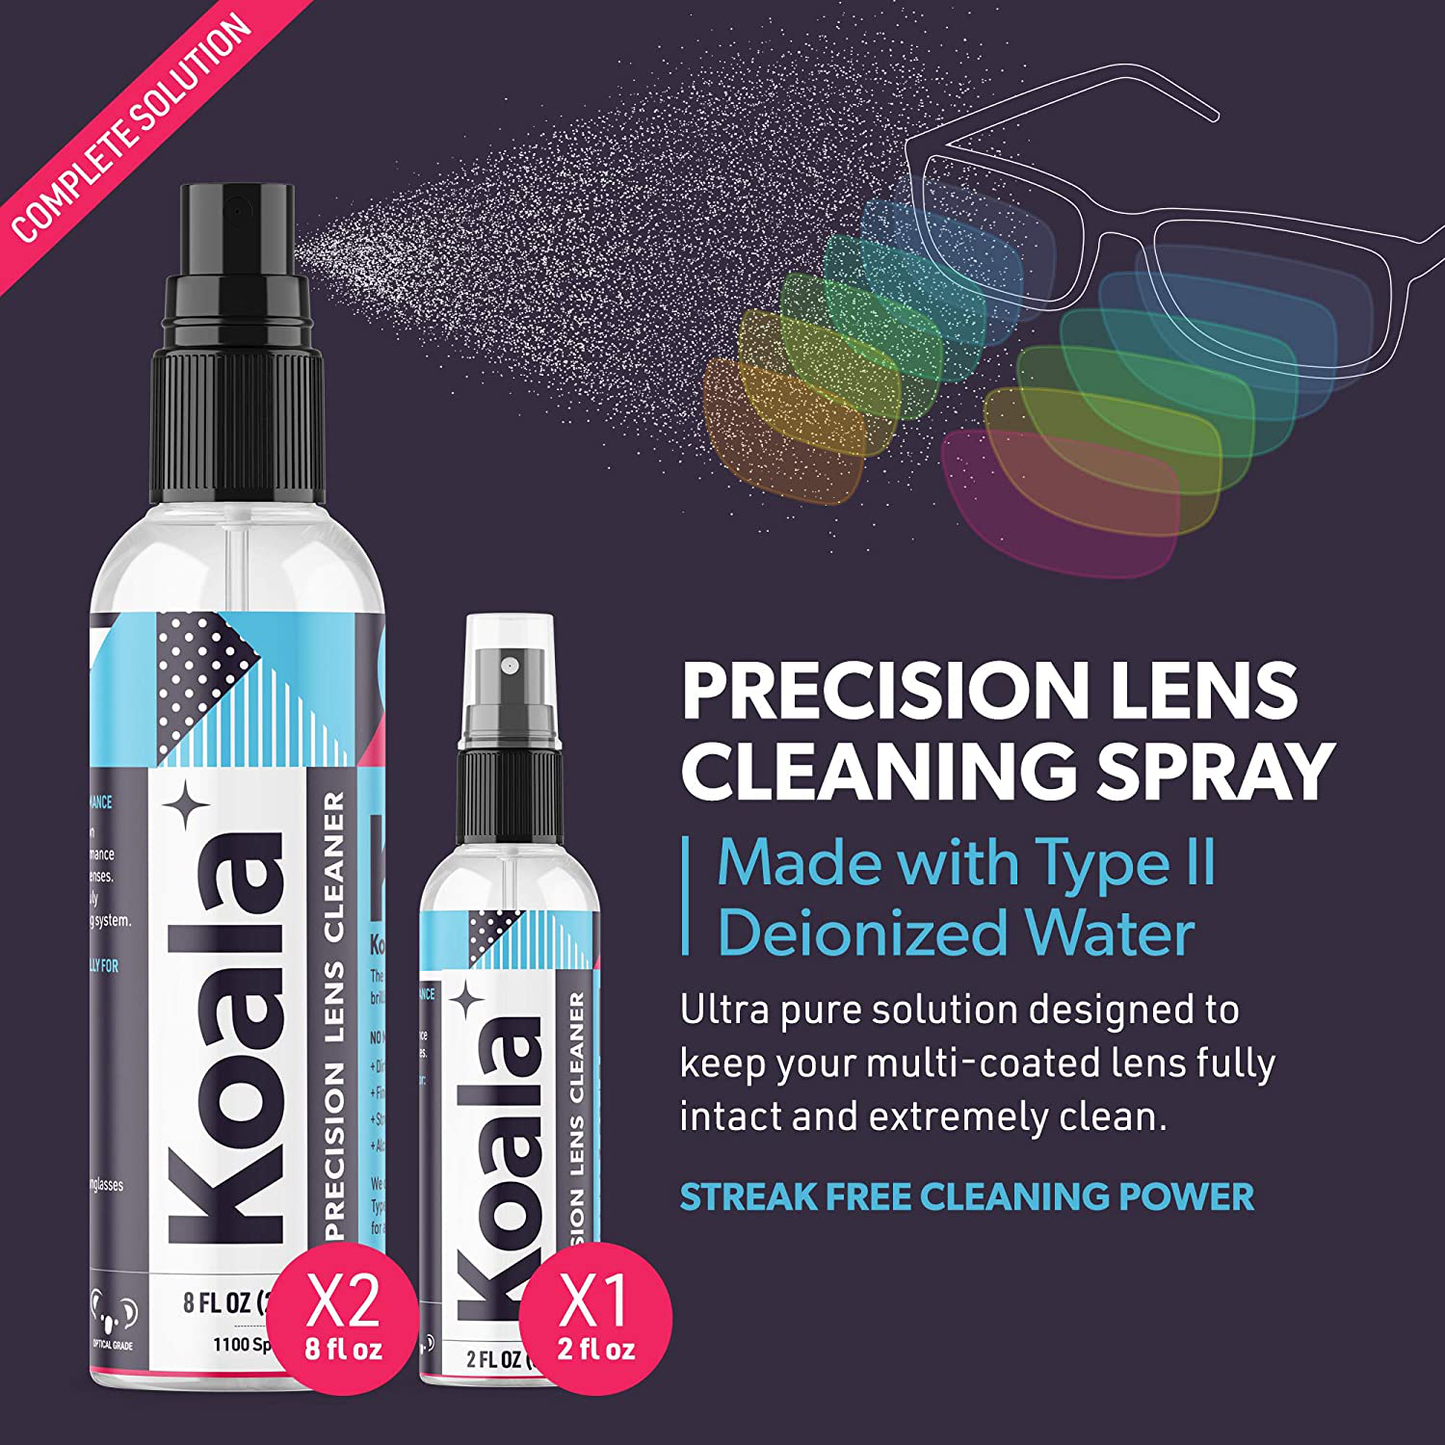 Koala Eyeglass Lens Cleaner Spray Kit | American Made | 18 Ounces + 3 Koala Cloths | Streak and Alcohol Free | Carefully Engineered Glasses Cleaner | Safe for All Lenses